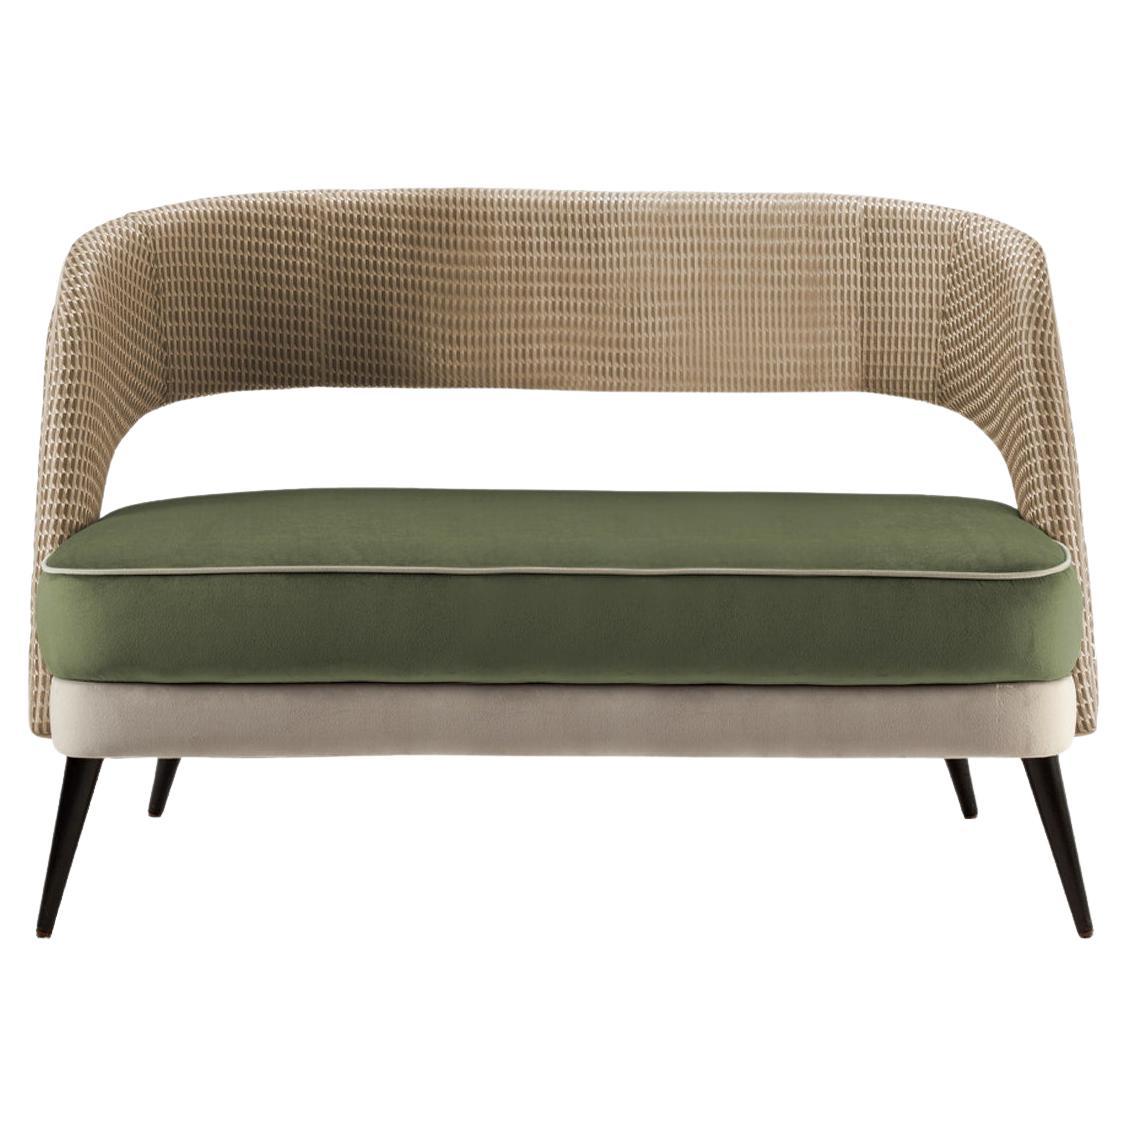 2-Sitzer-Sofa in Olivgrün mit Sitz und Rückenlehne aus strukturiertem Stoff mit Holzfüßen